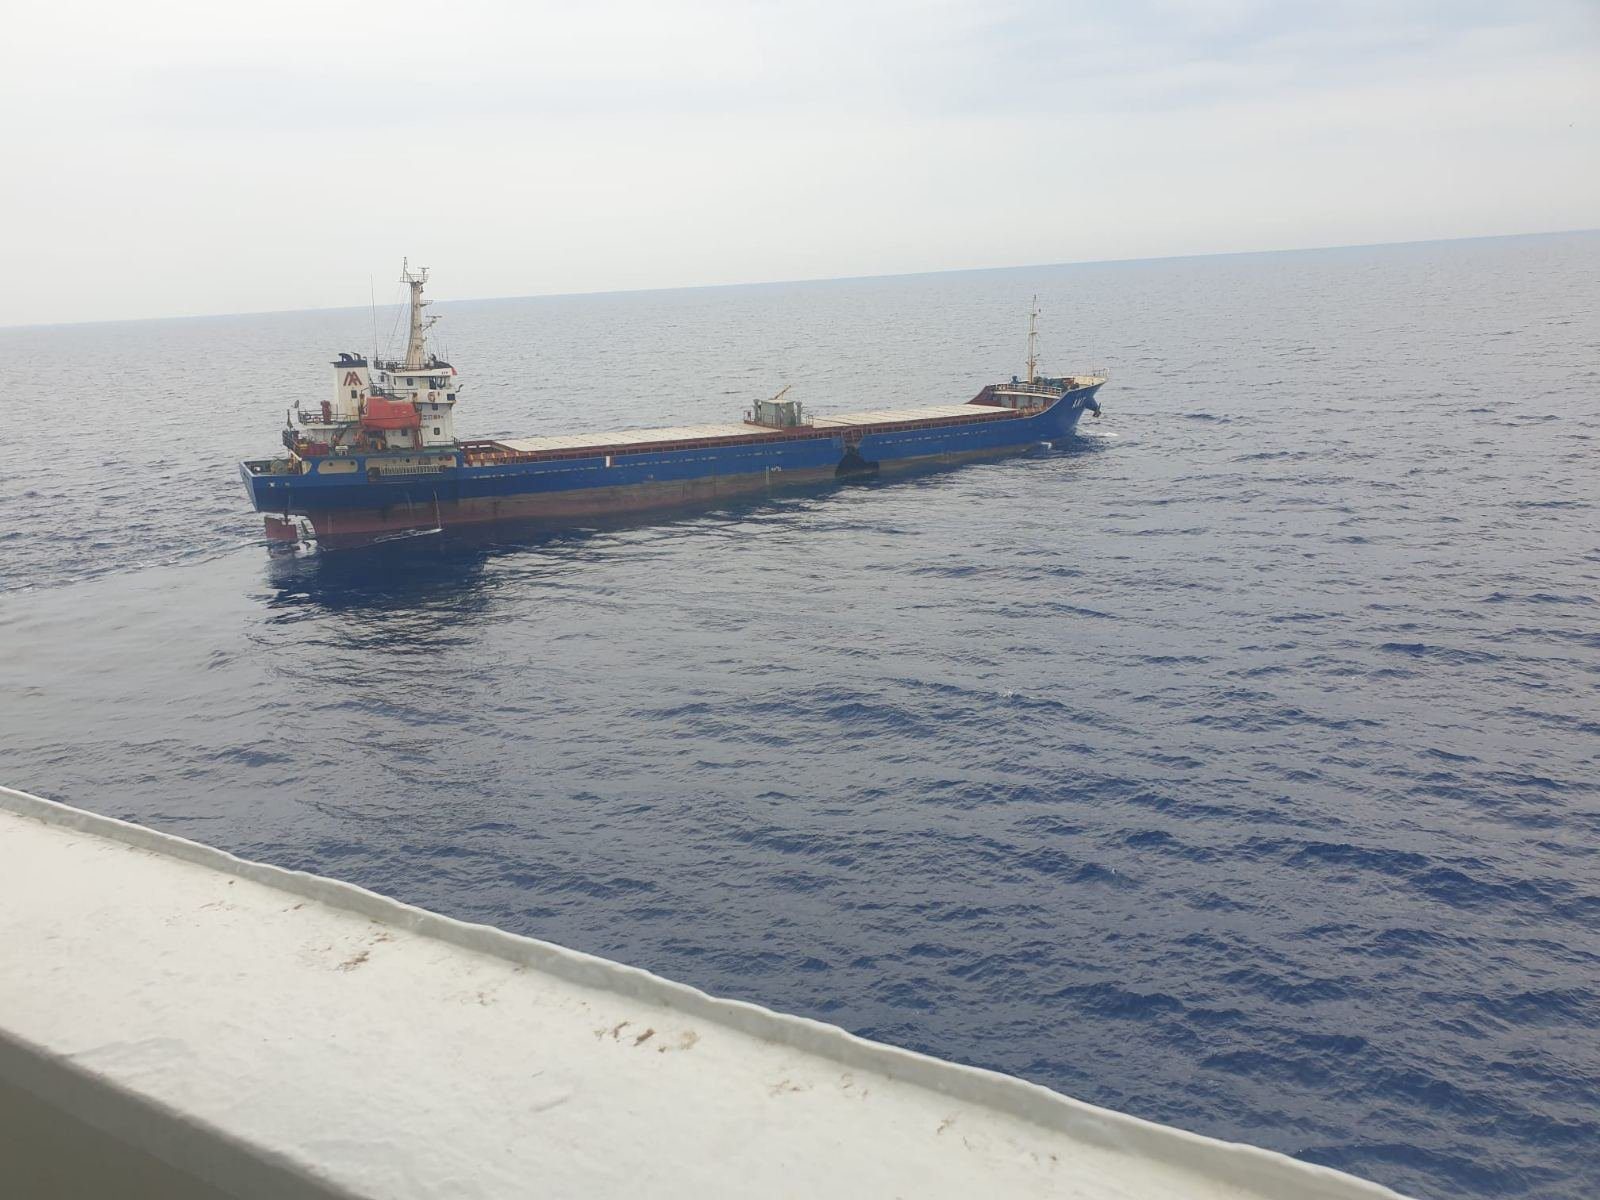 Incident Photos: Cargo Ships Collide Off Greece